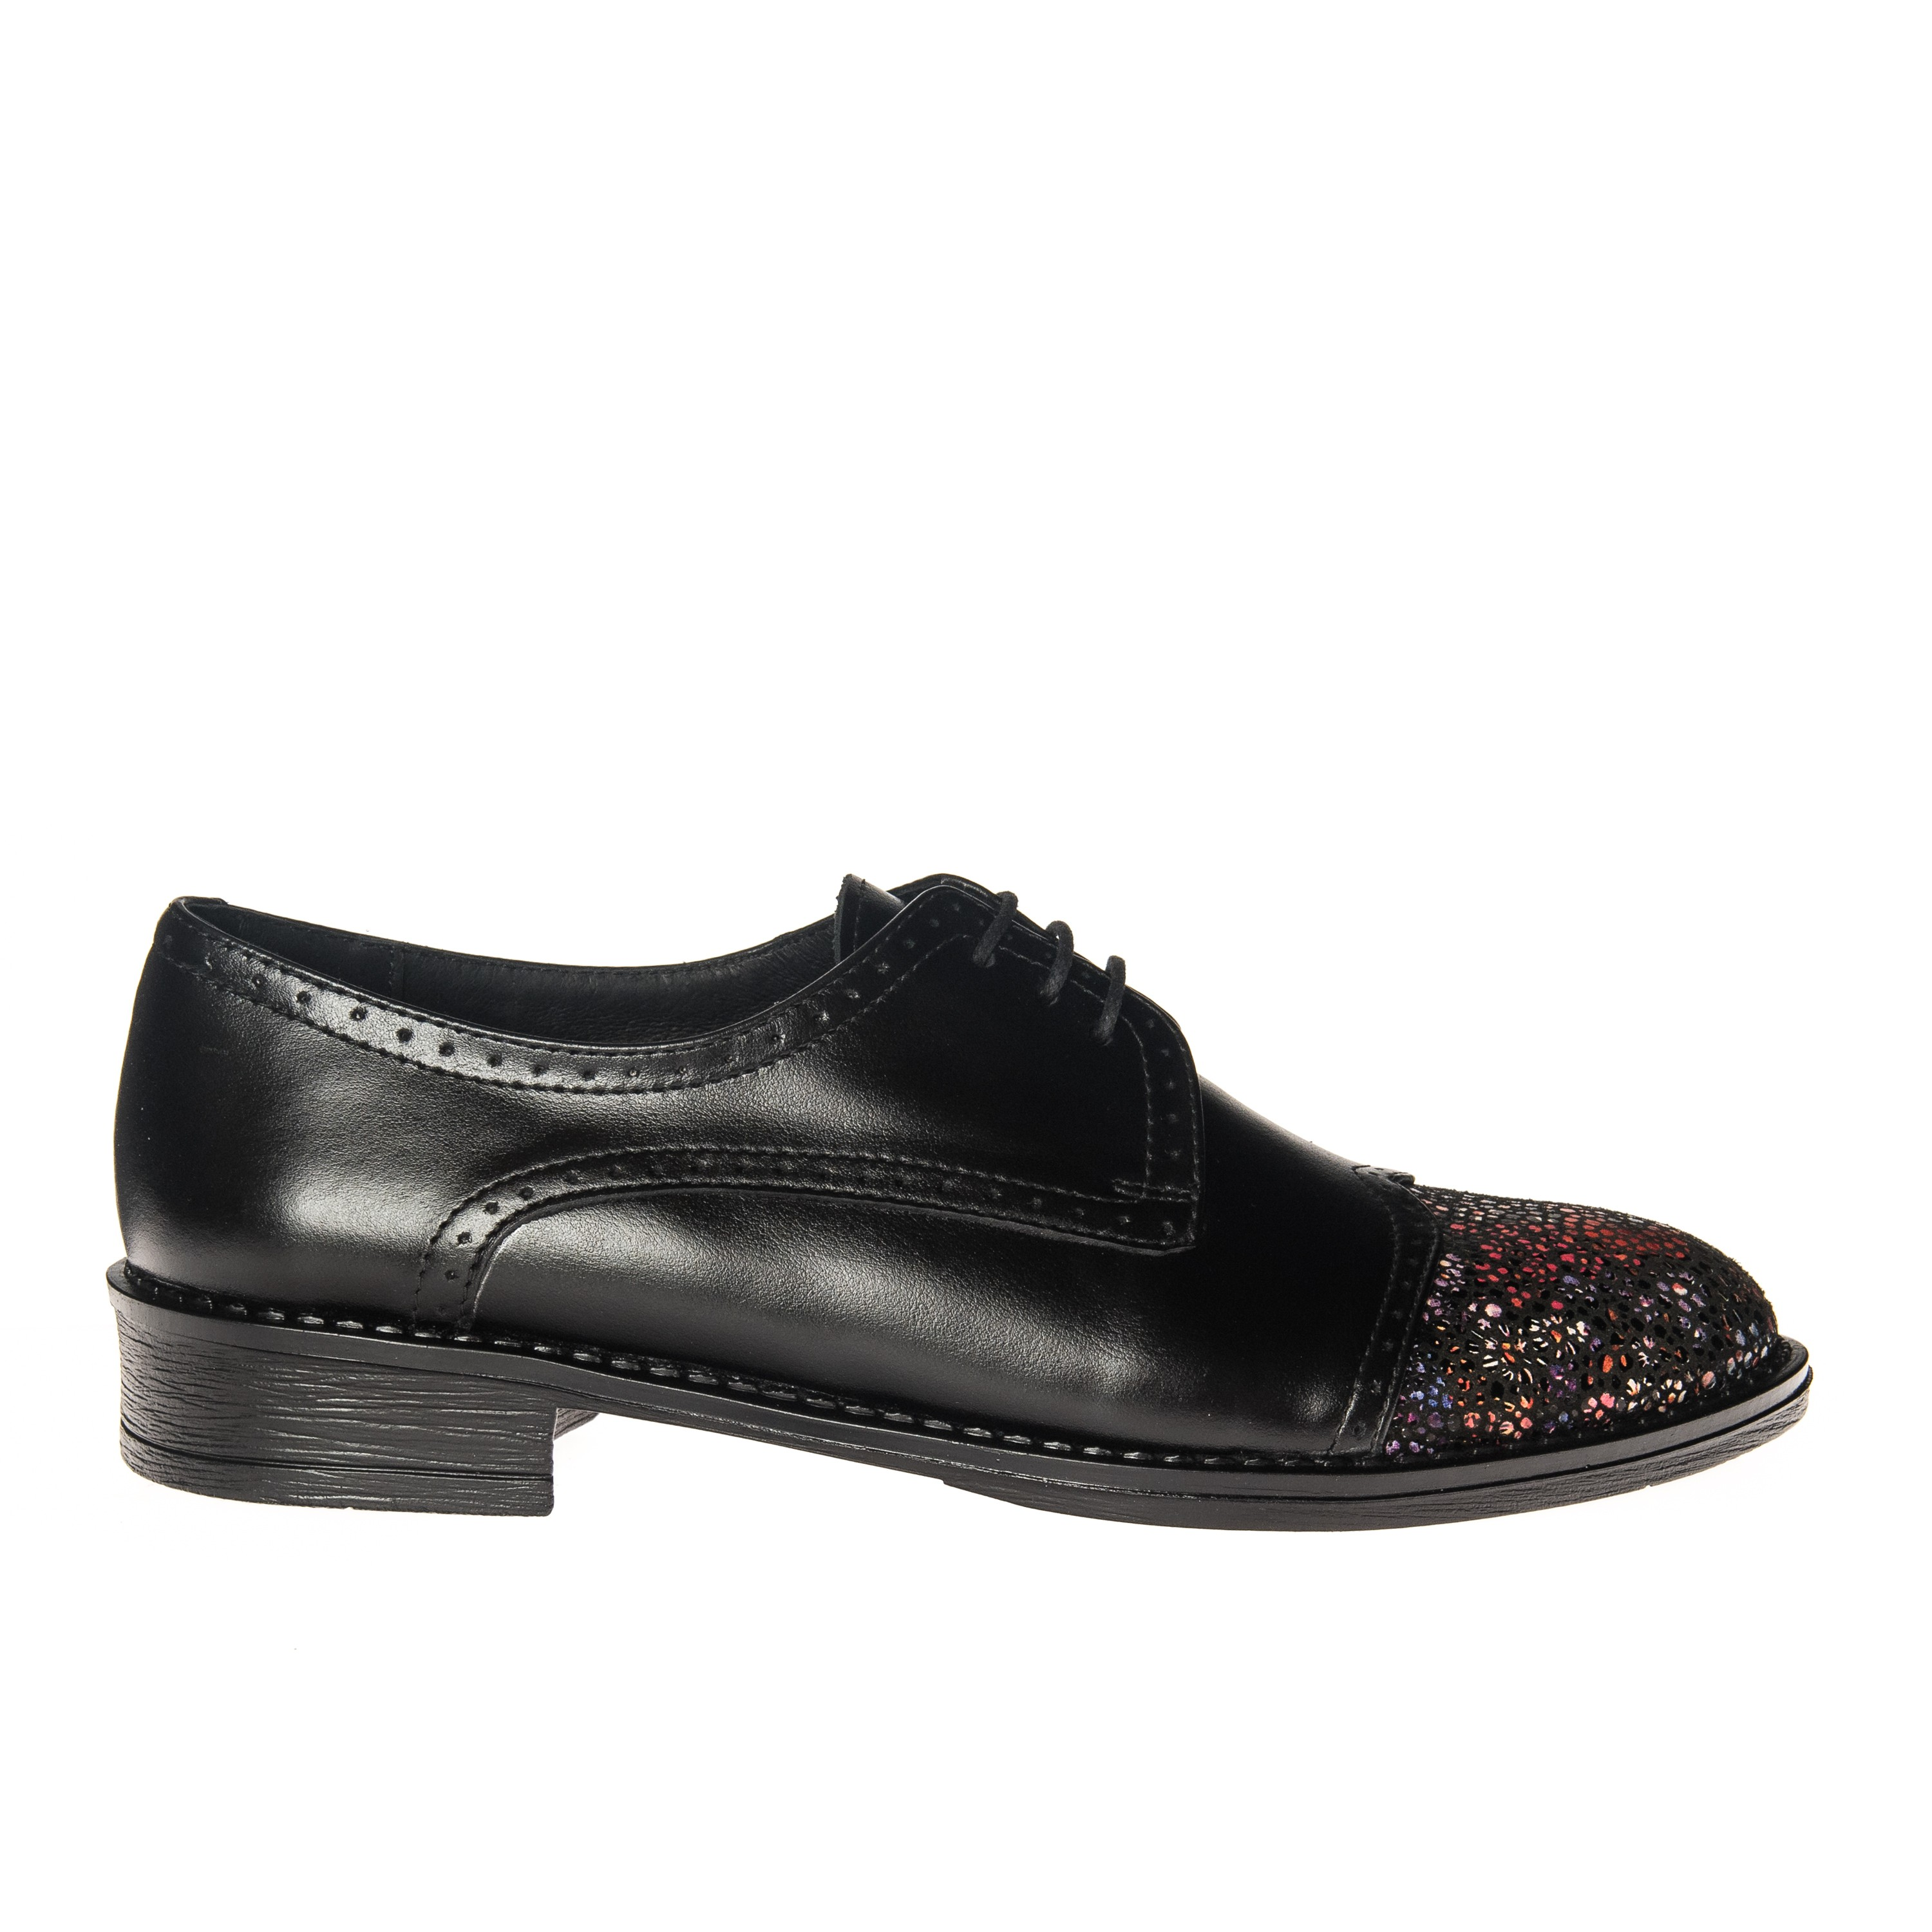 Pantofi dama din piele naturala - Negru varf cu flori - G11 NVF